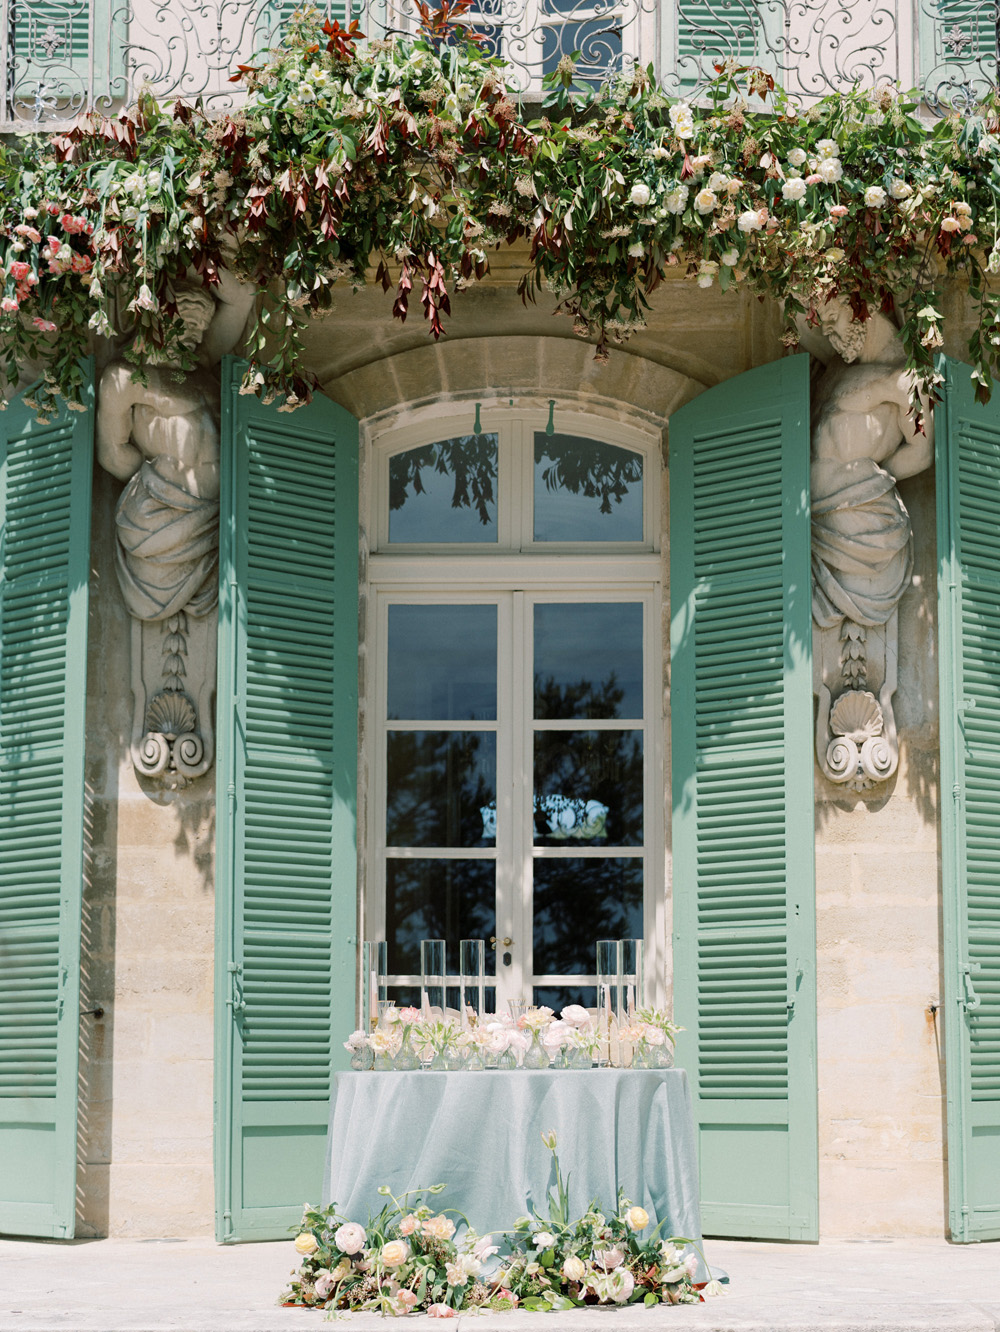 turquoise shutters at Chateau De Tourreau